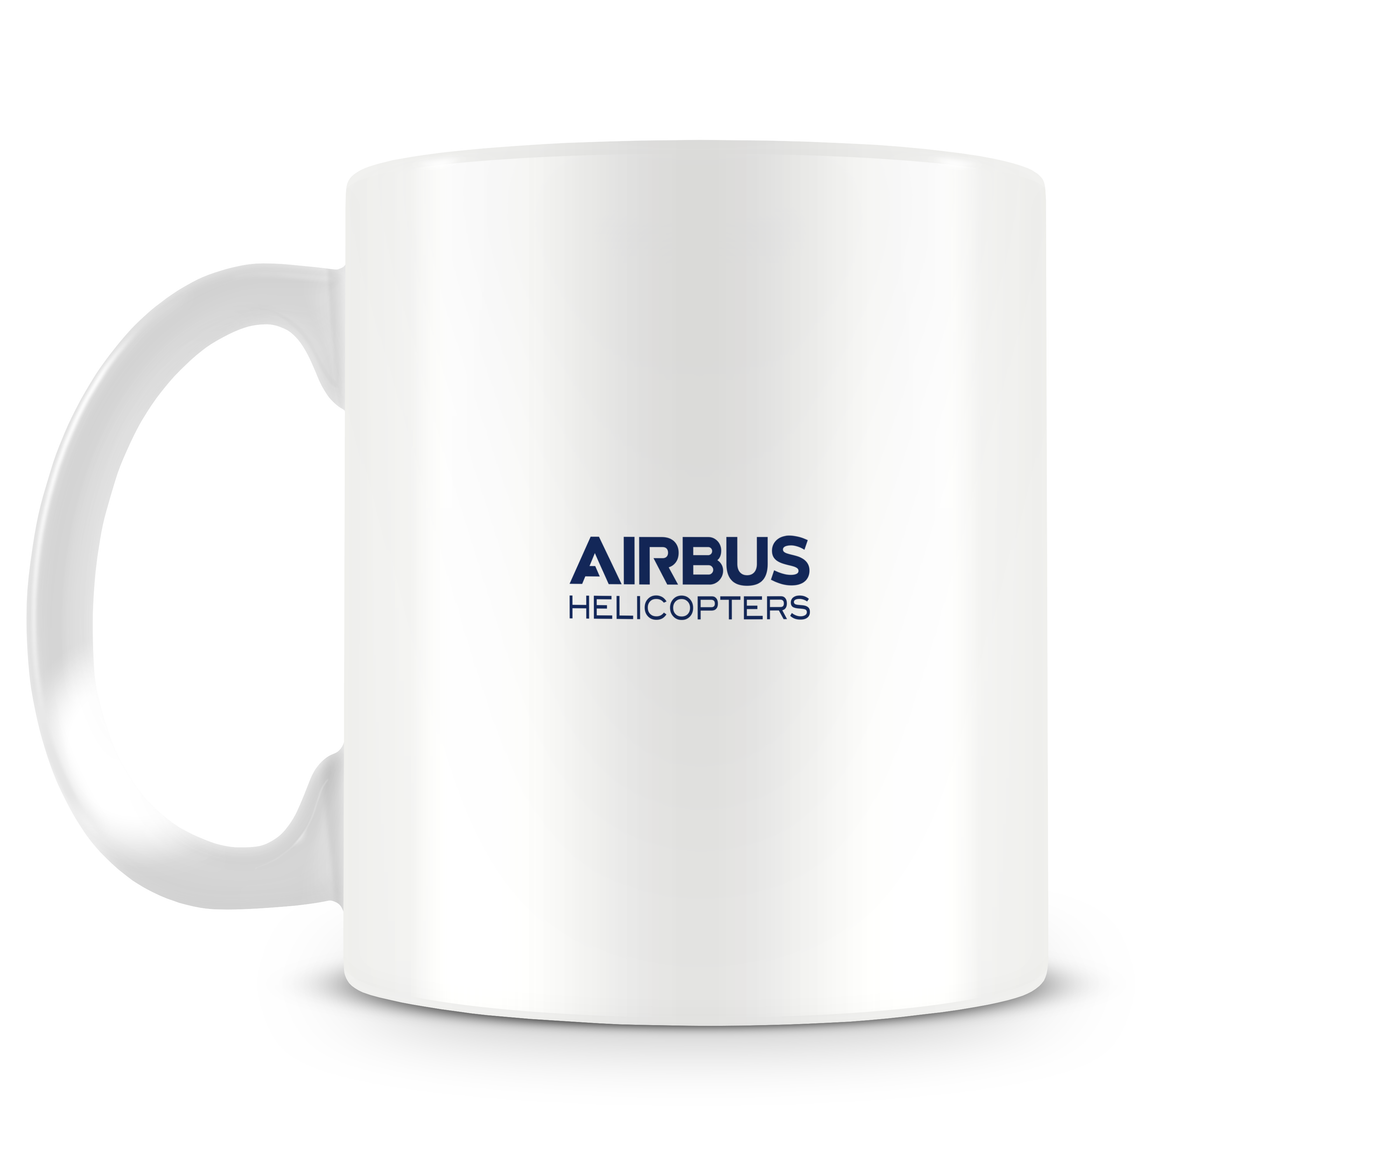 Airbus H175 Mug - Aircraft Mugs